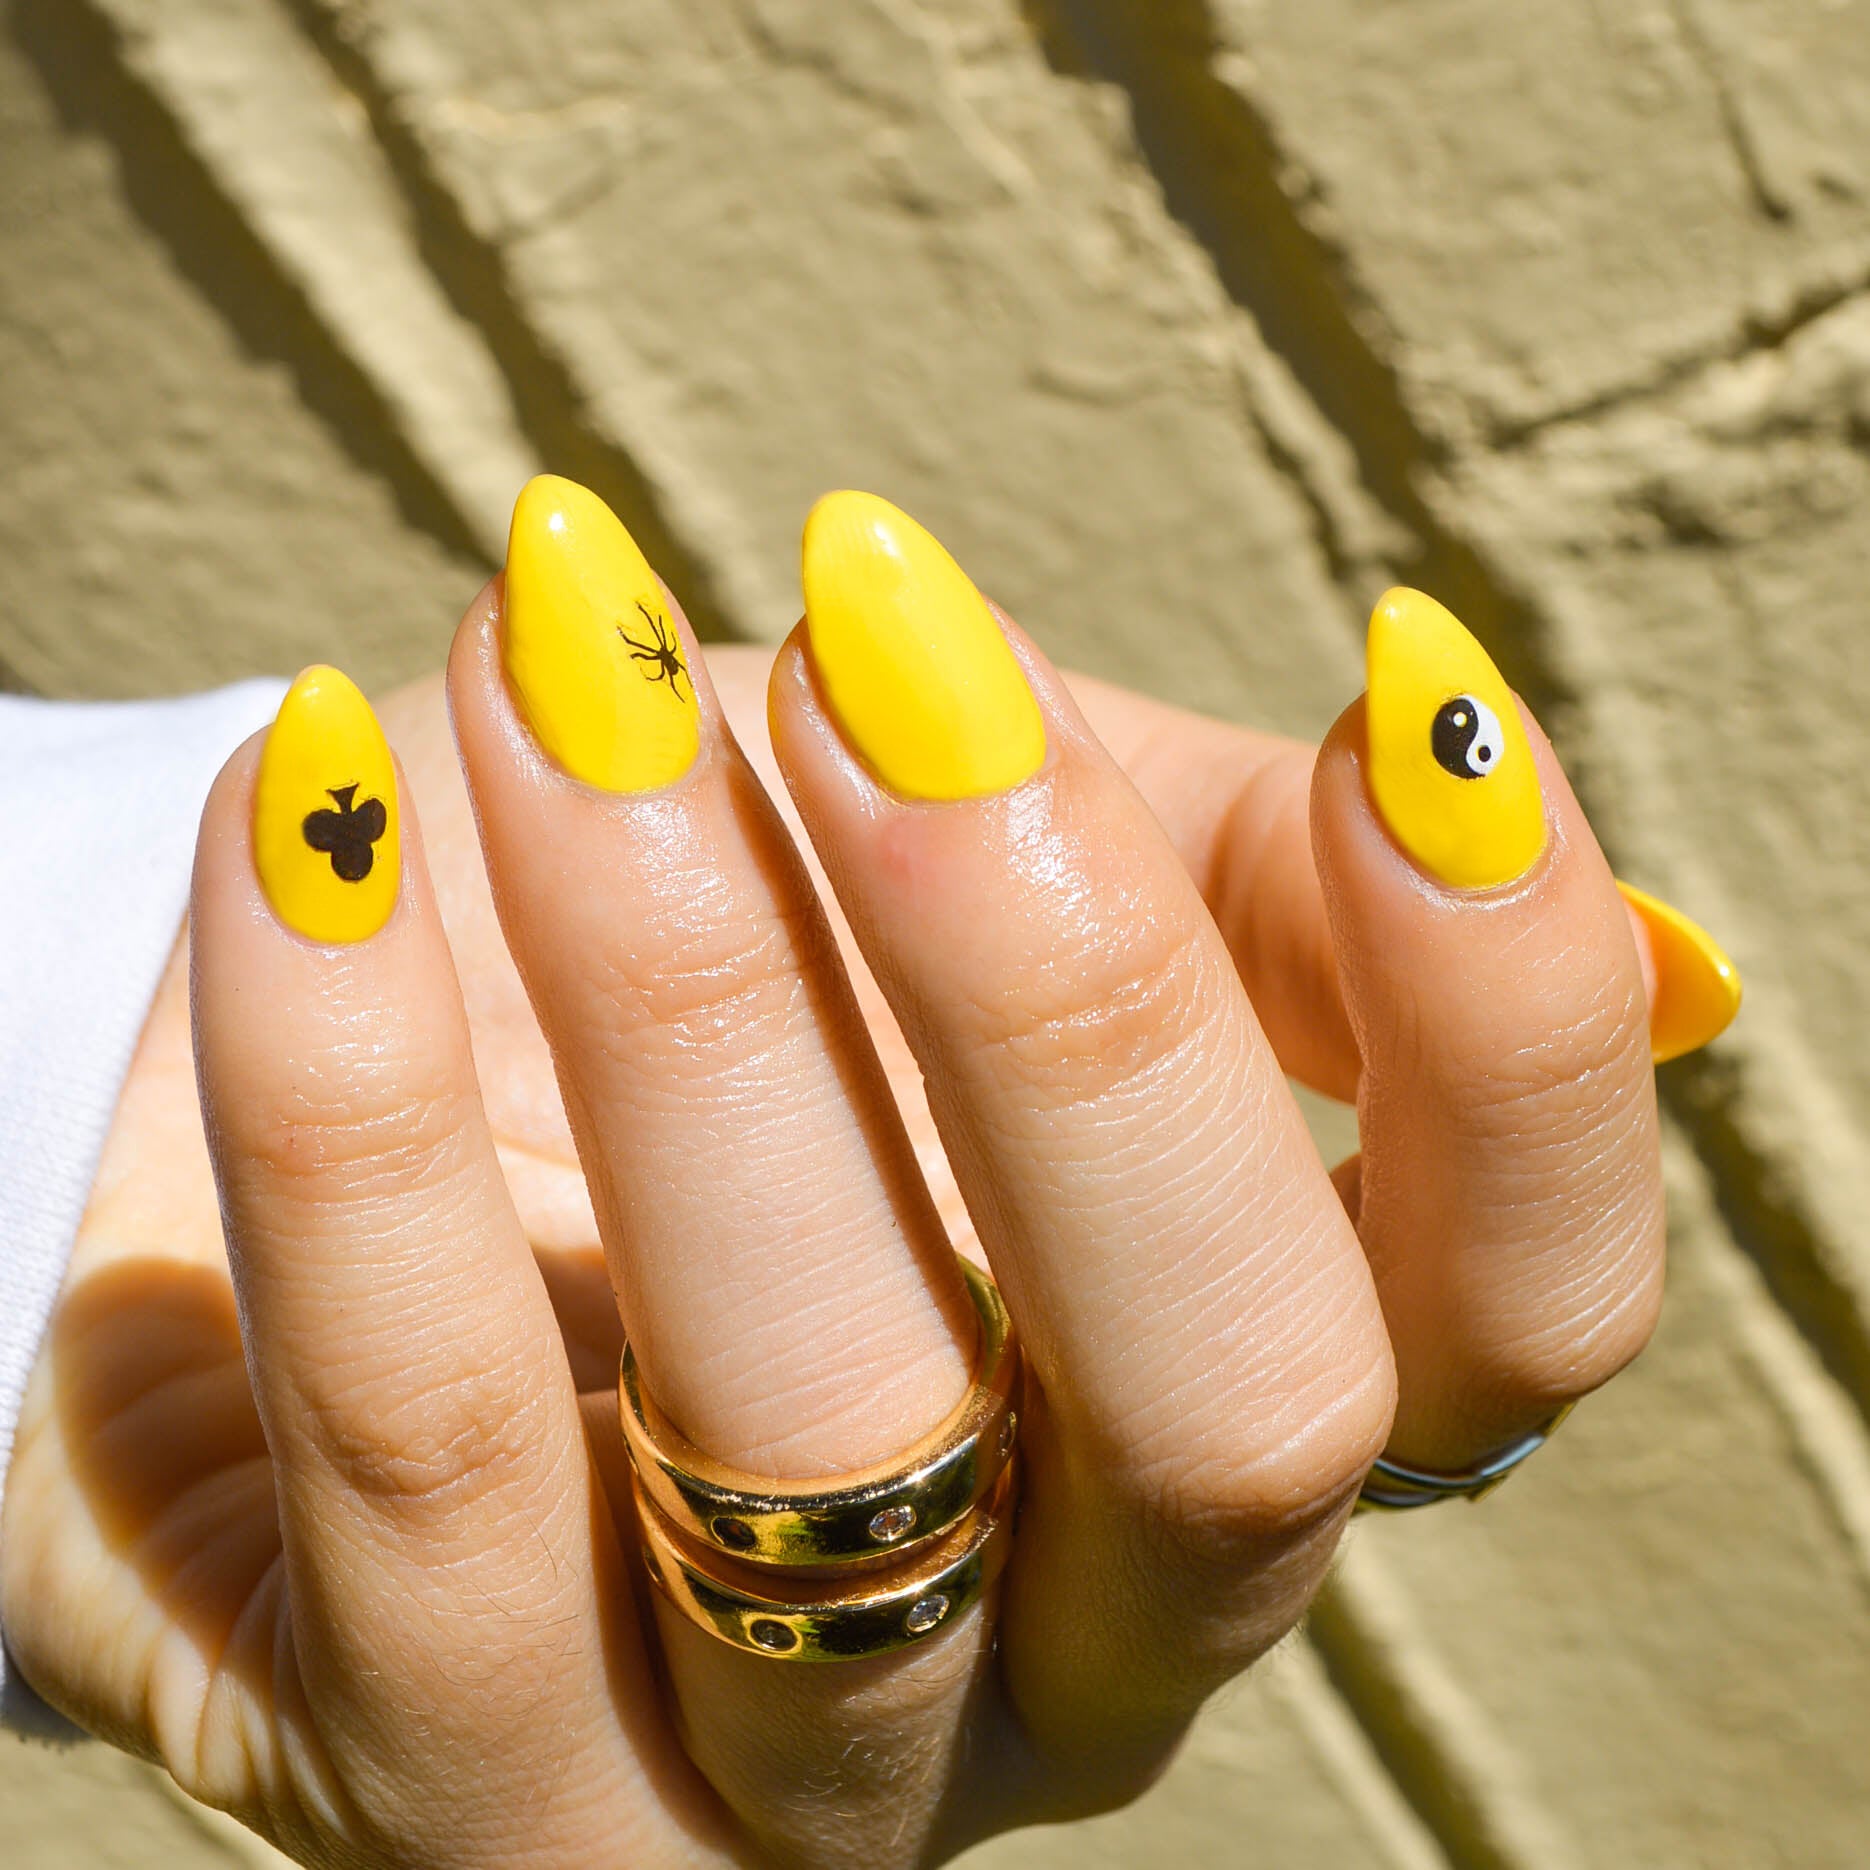 Jackpot Nail Art Stickers on yellow nails